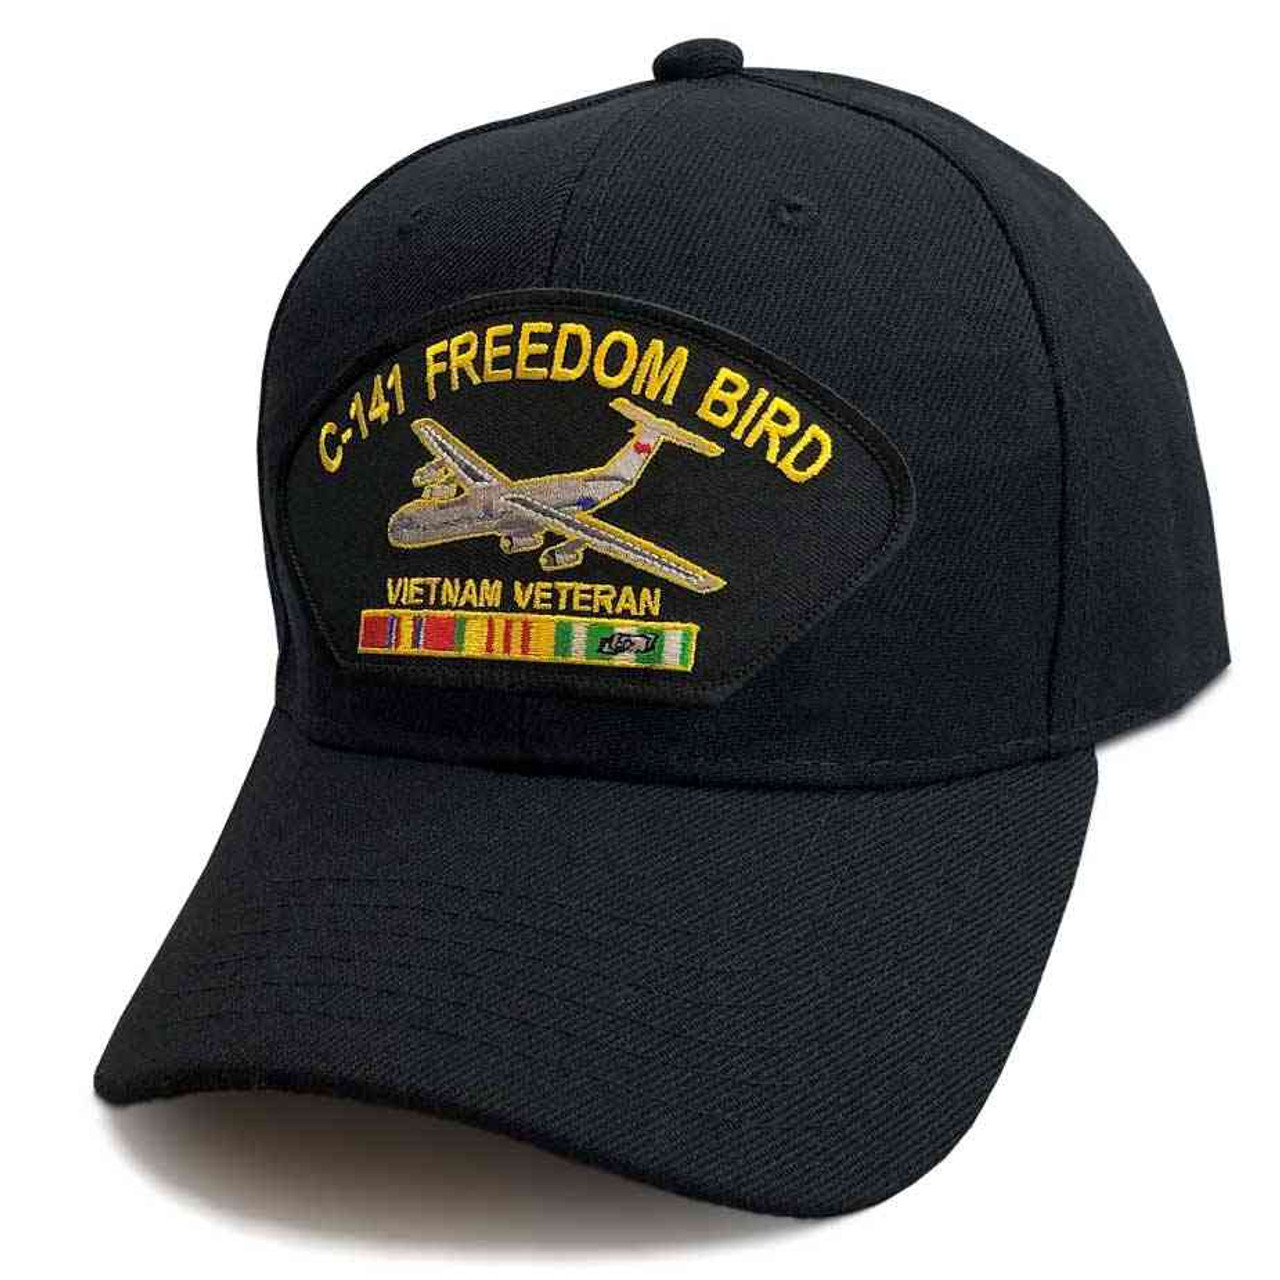 vietnam veteran hat ribbons and c141 freedom bird